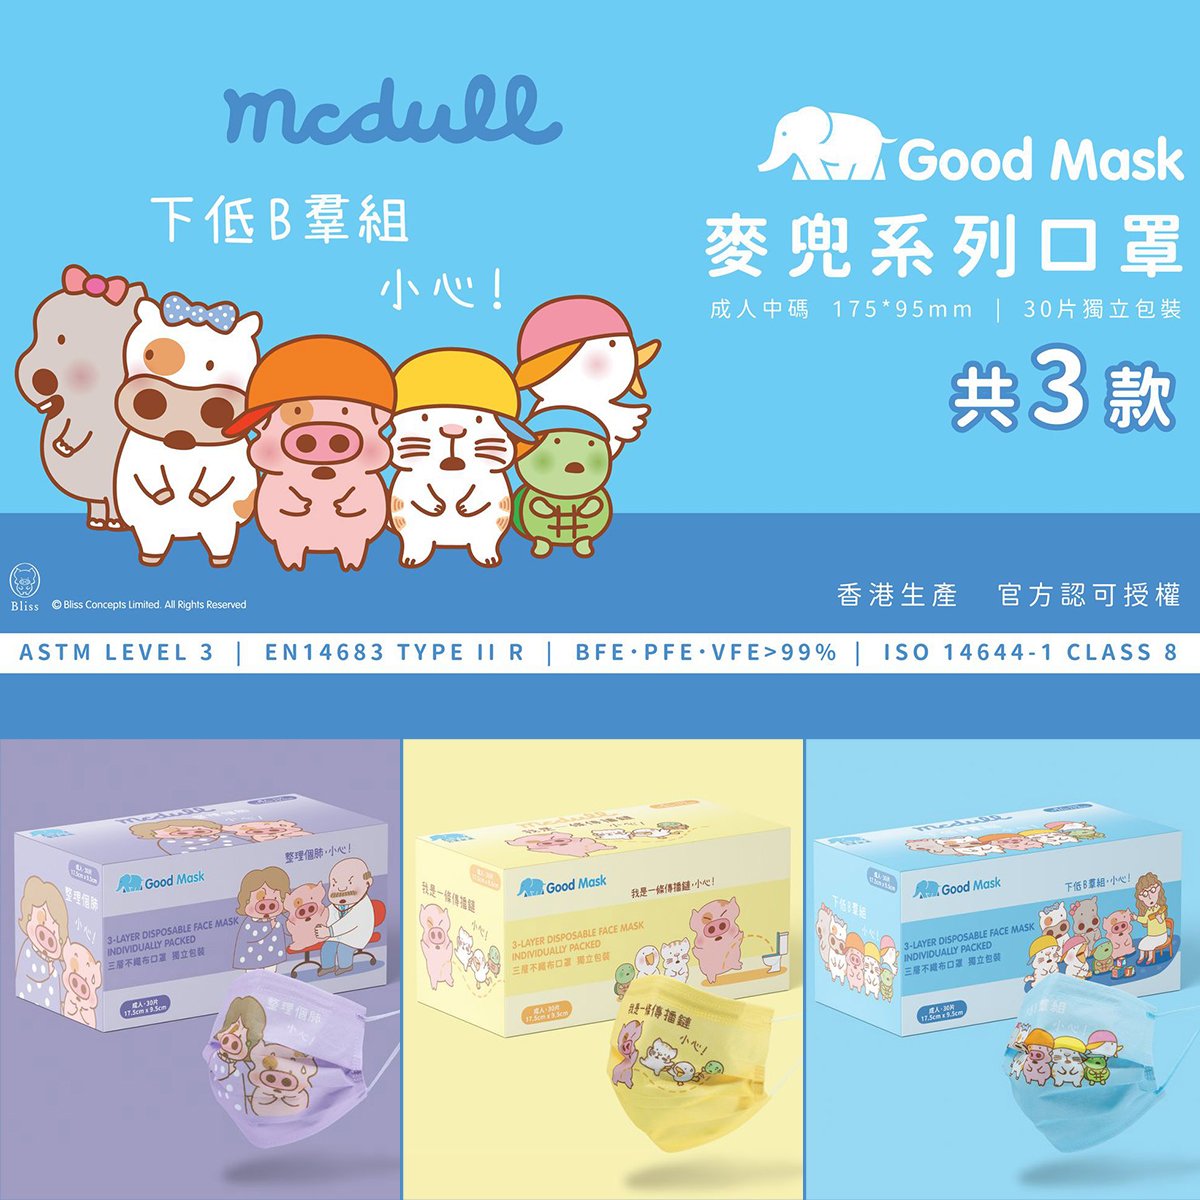 Mask HongKong Good Mask x McDull LeveL 3 Purple / Yellow Adult (30 Packs)